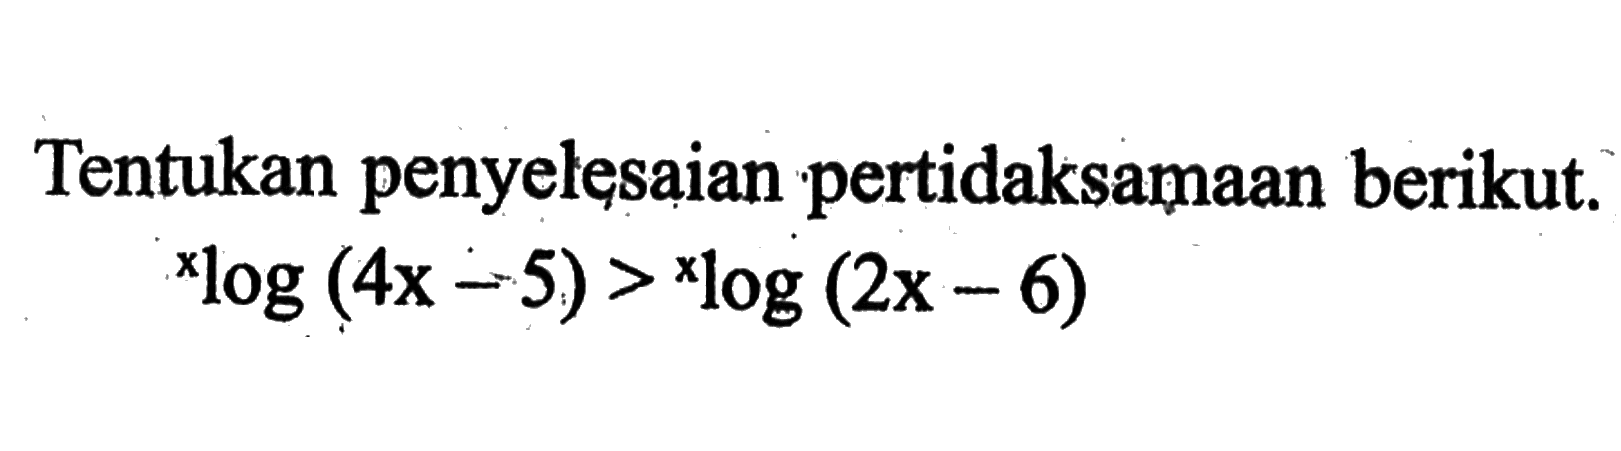 Tentukan penyelesaian pertidaksamaan berikut. xlog(4x-5) > xlog(2x-6)